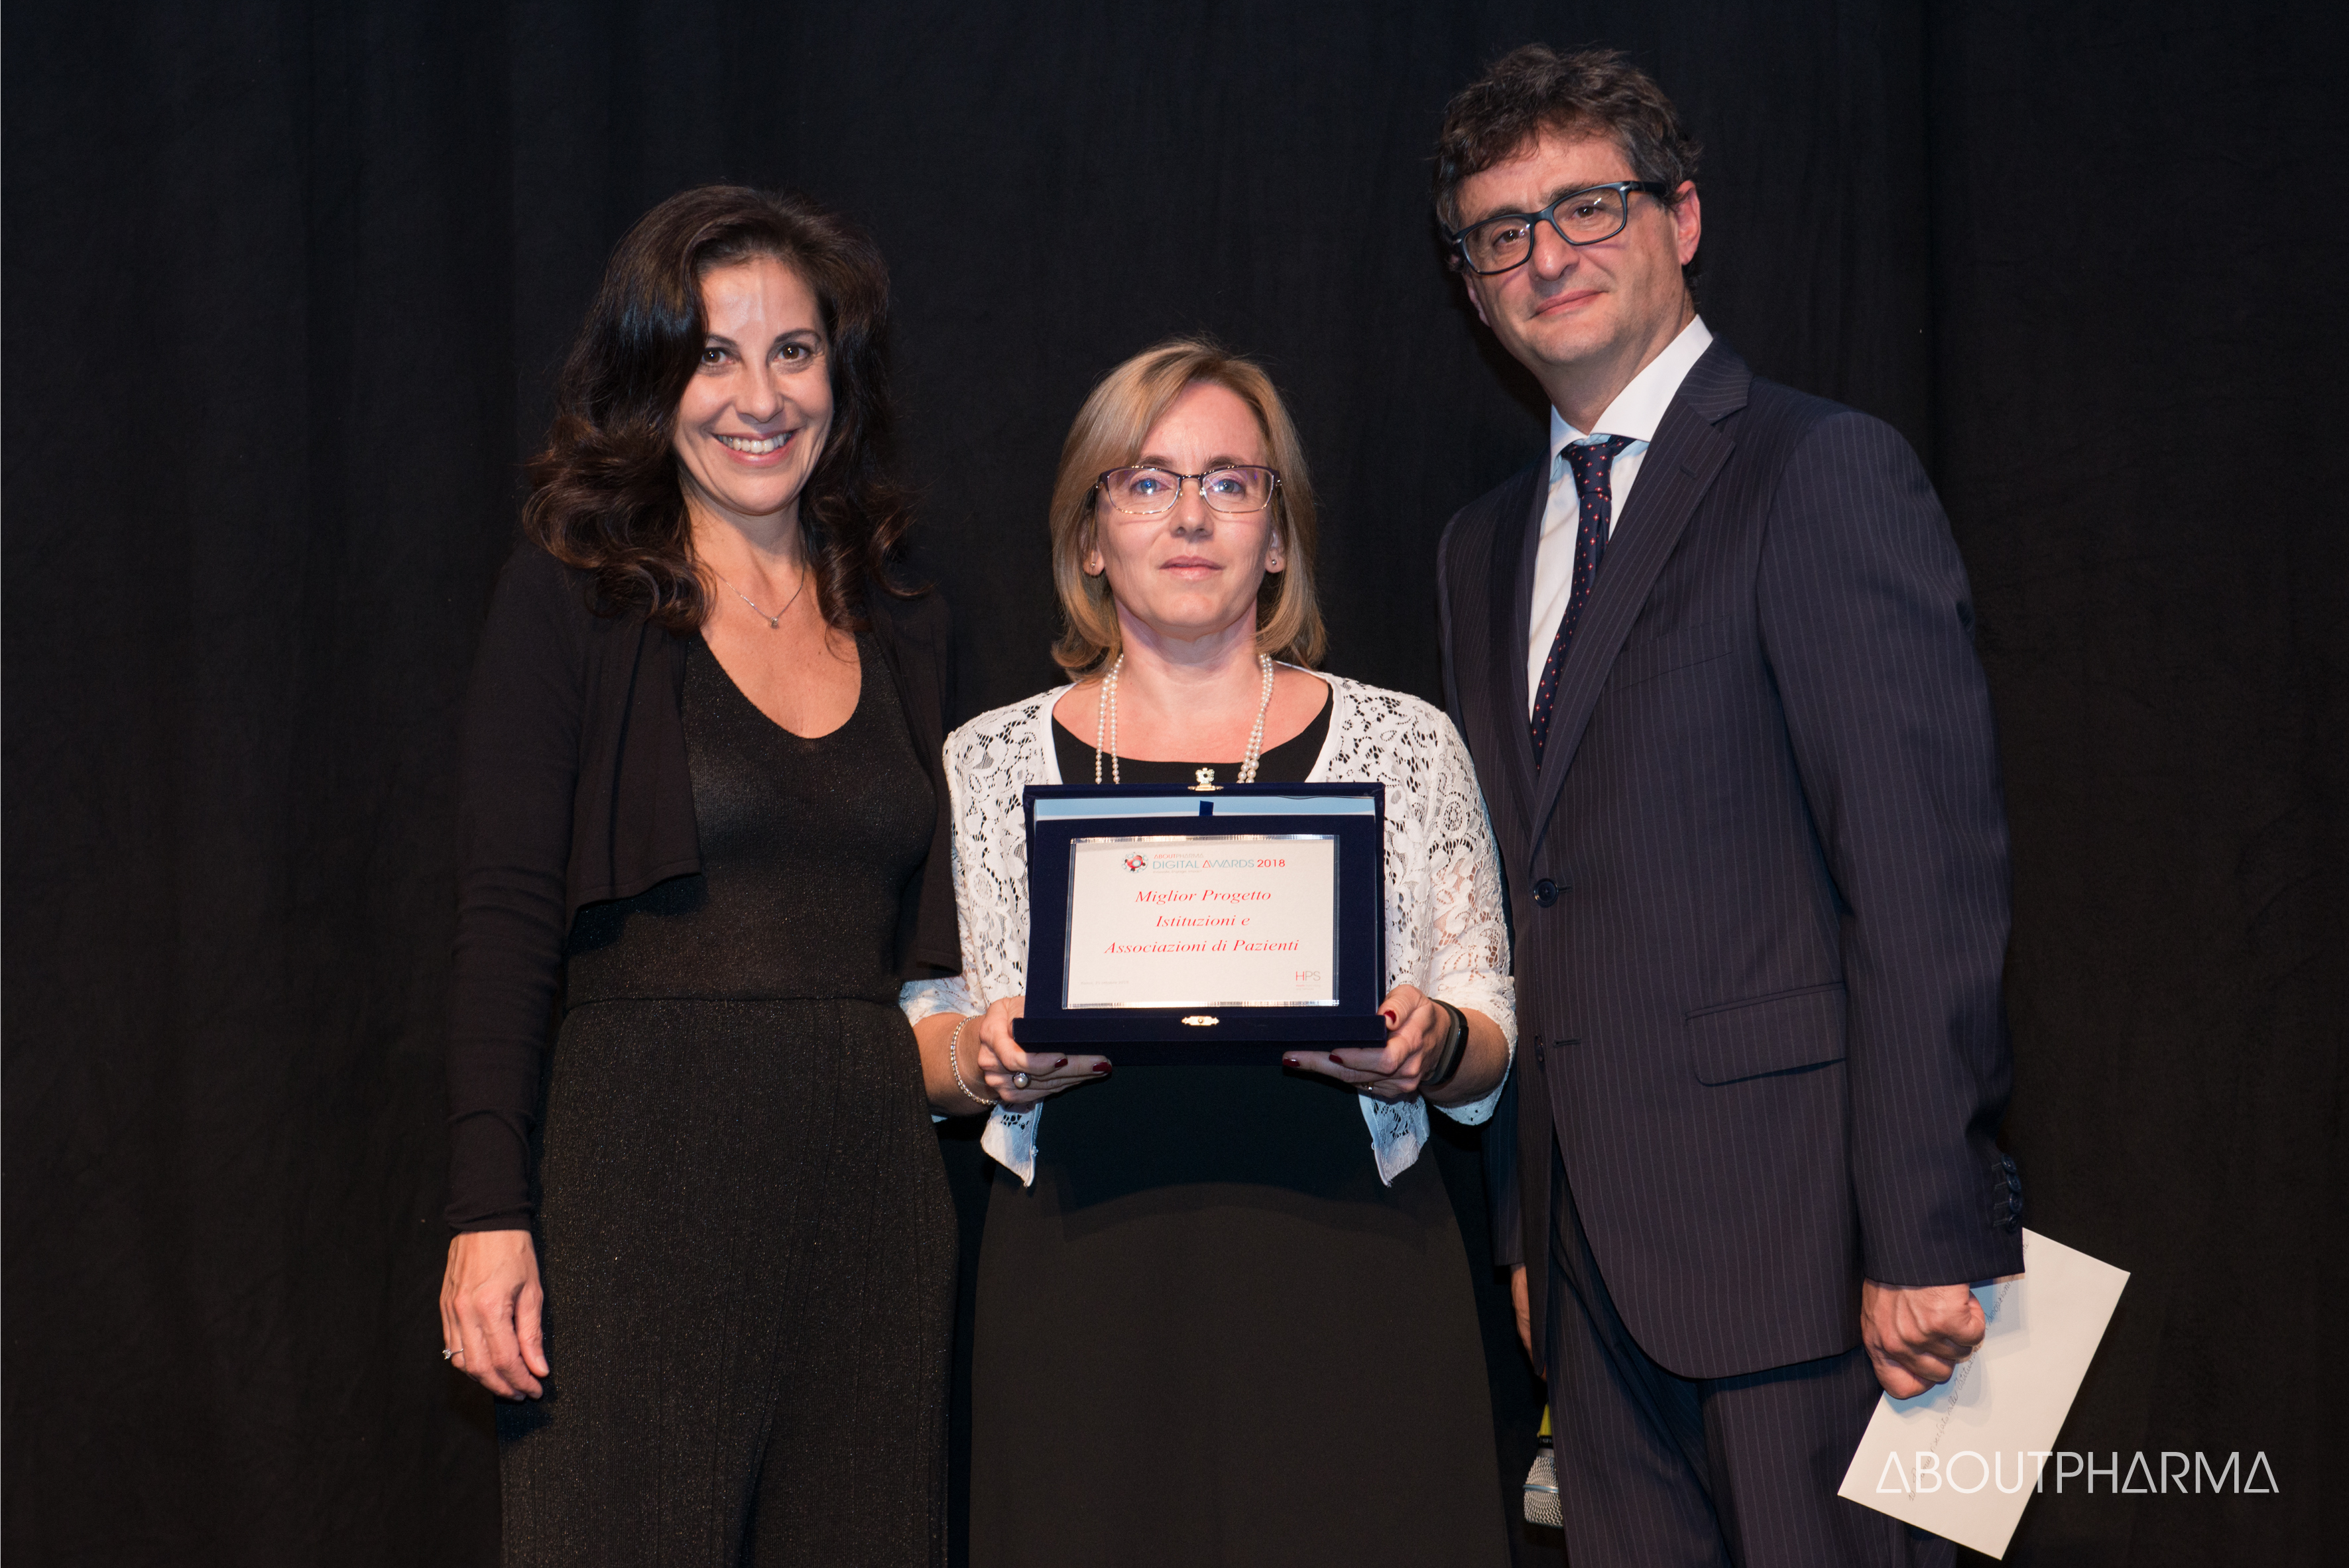 La Prof. Sara Boccalini (Università degli Studi di Firenze, a destra) e la Prof. Donatella Panatto (Università degli Studi di Genova, a sinistra) ritirano il premio agli AboutPharma Digital Awards 2018.